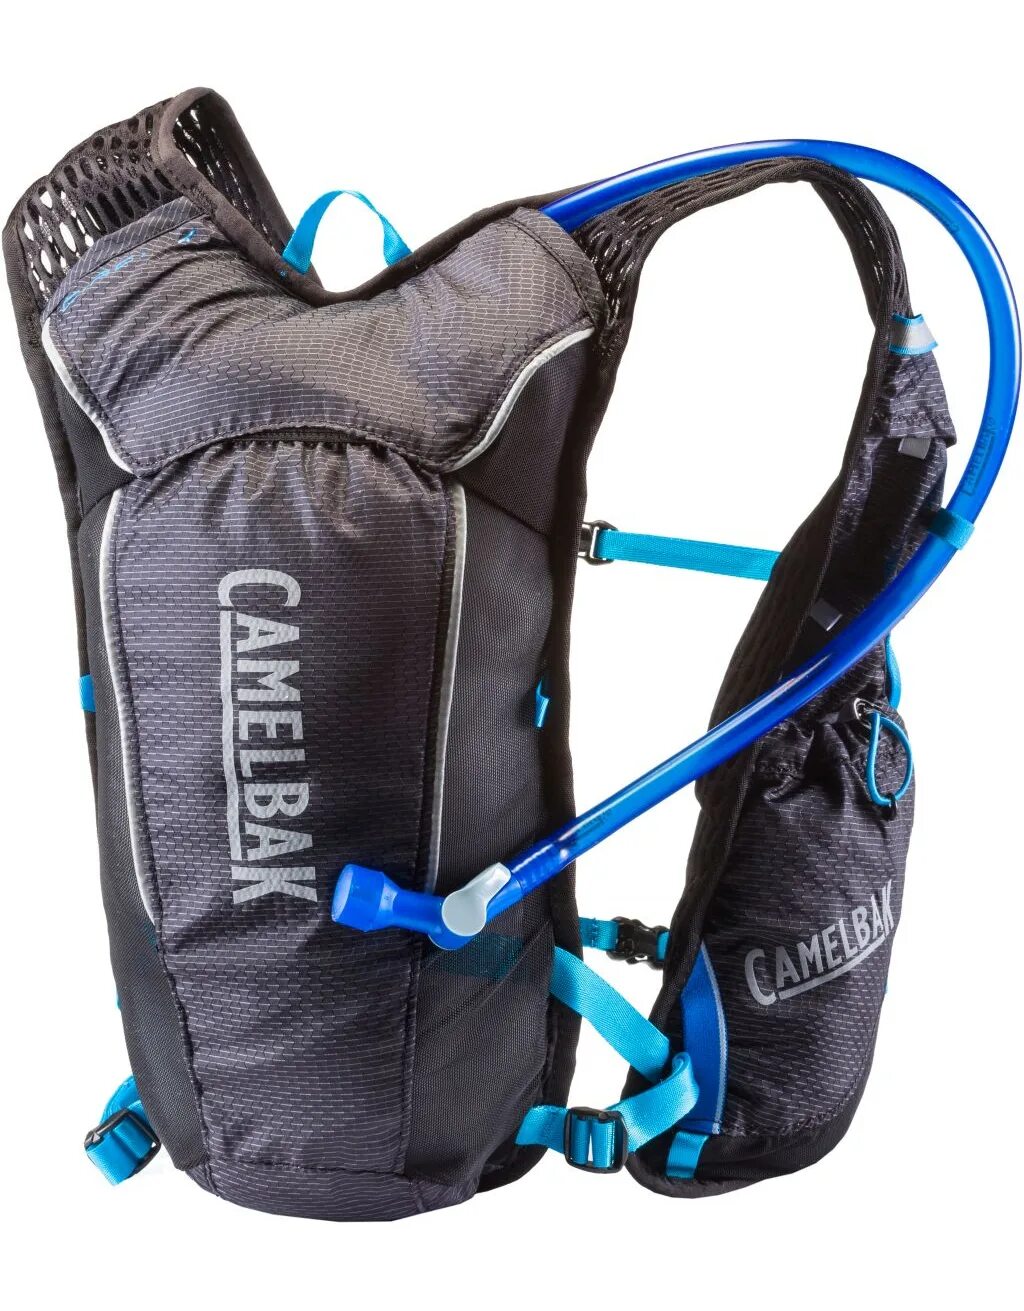 Рюкзак ASICS Hydration Vest 142207 0904. Camelbak рюкзак с питьевой системой. Поильная система для рюкзака. Жилет Inov питьевая система. Питьевой рюкзак